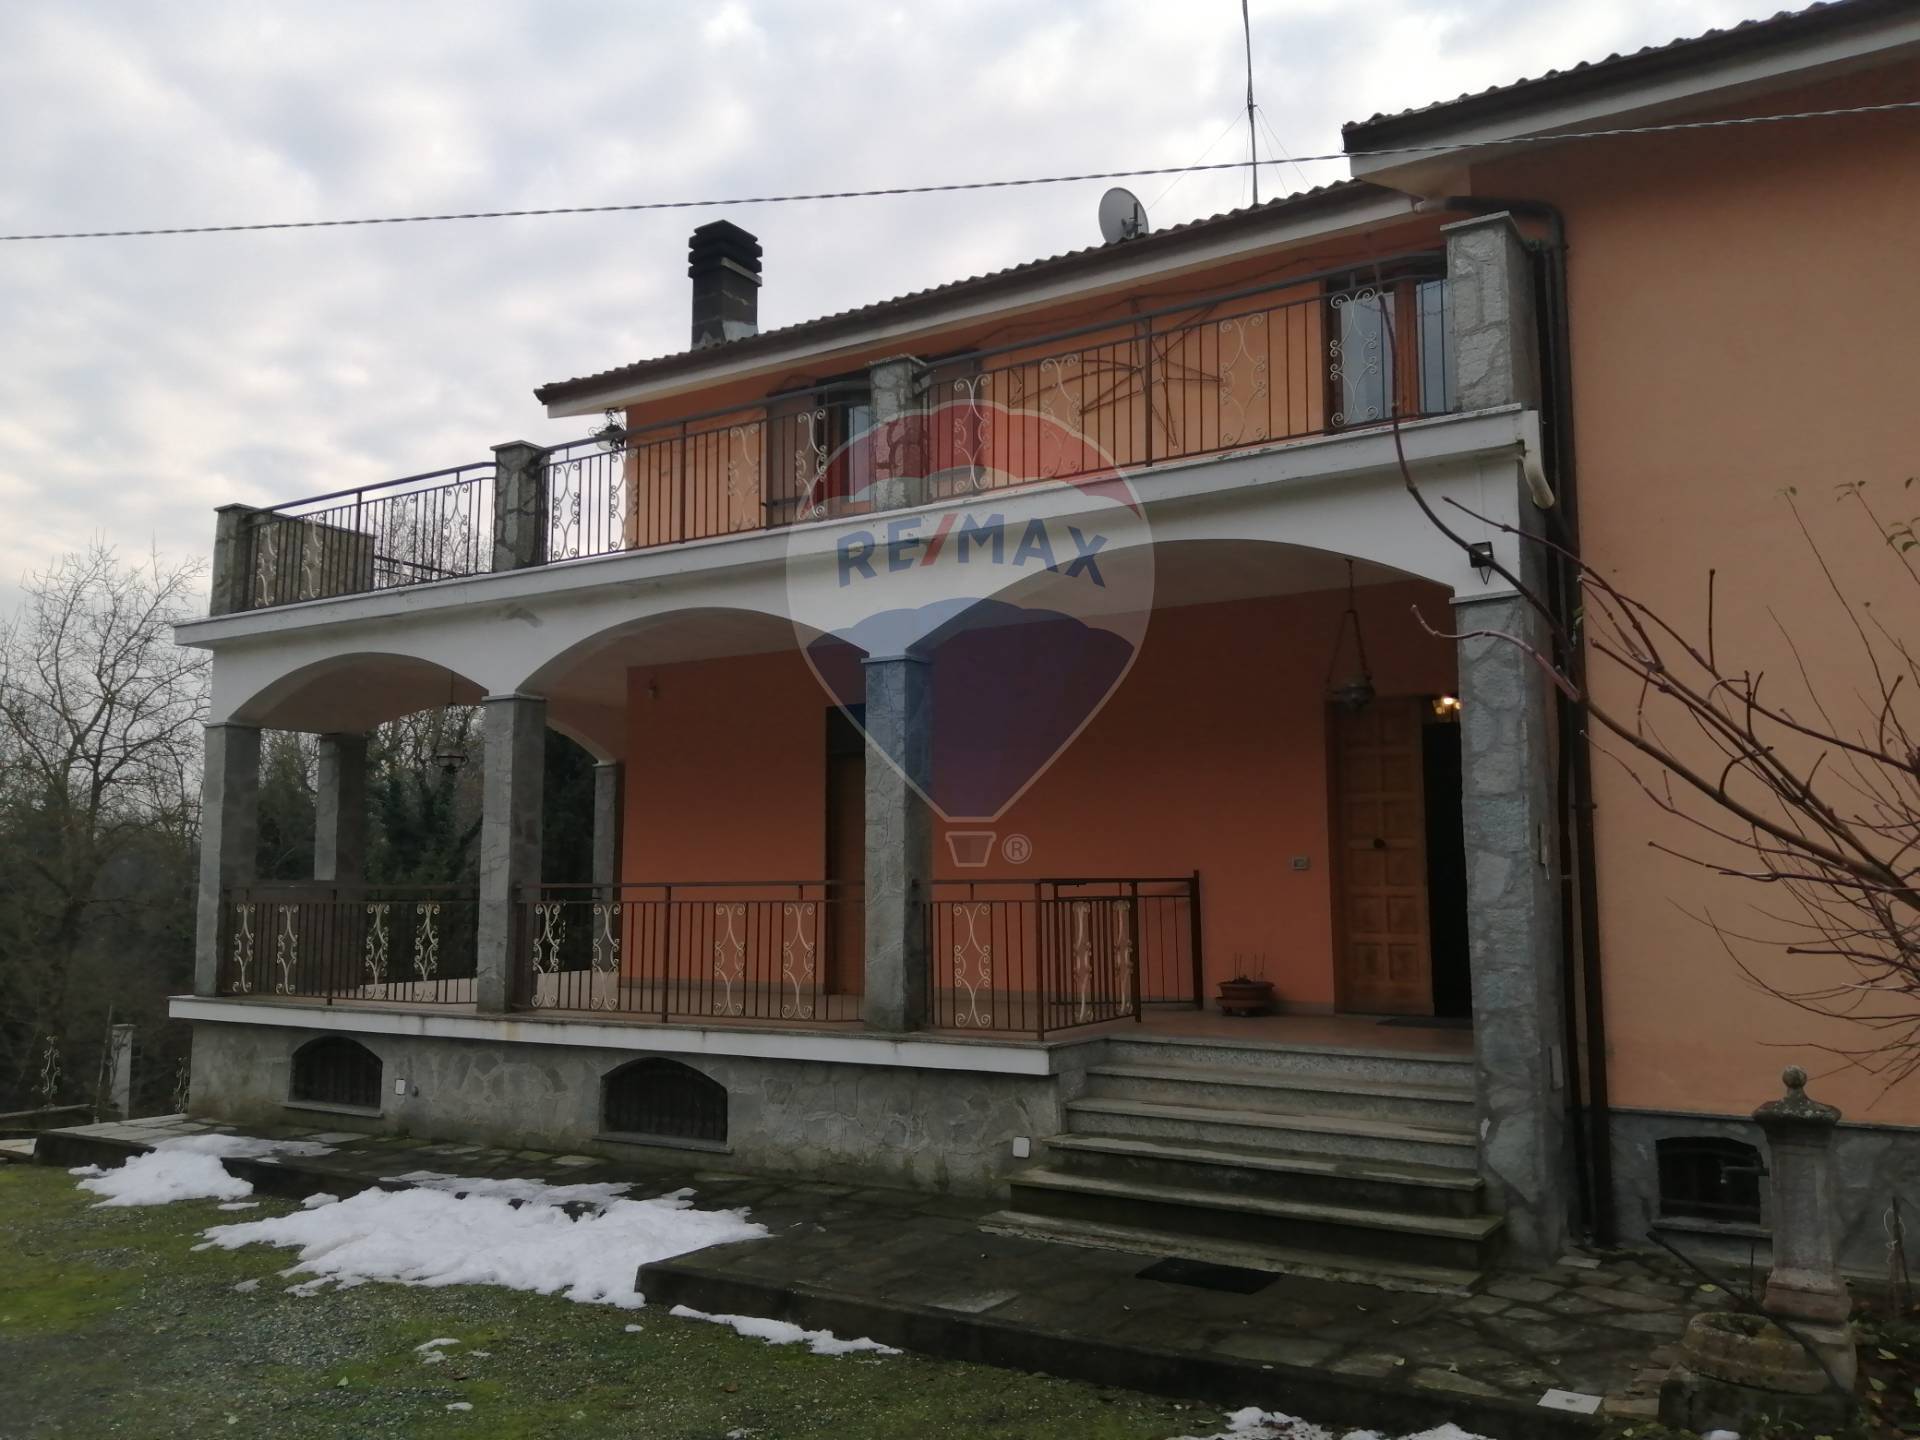 Villa Bifamiliare in vendita a Strevi, 8 locali, prezzo € 273.000 | CambioCasa.it